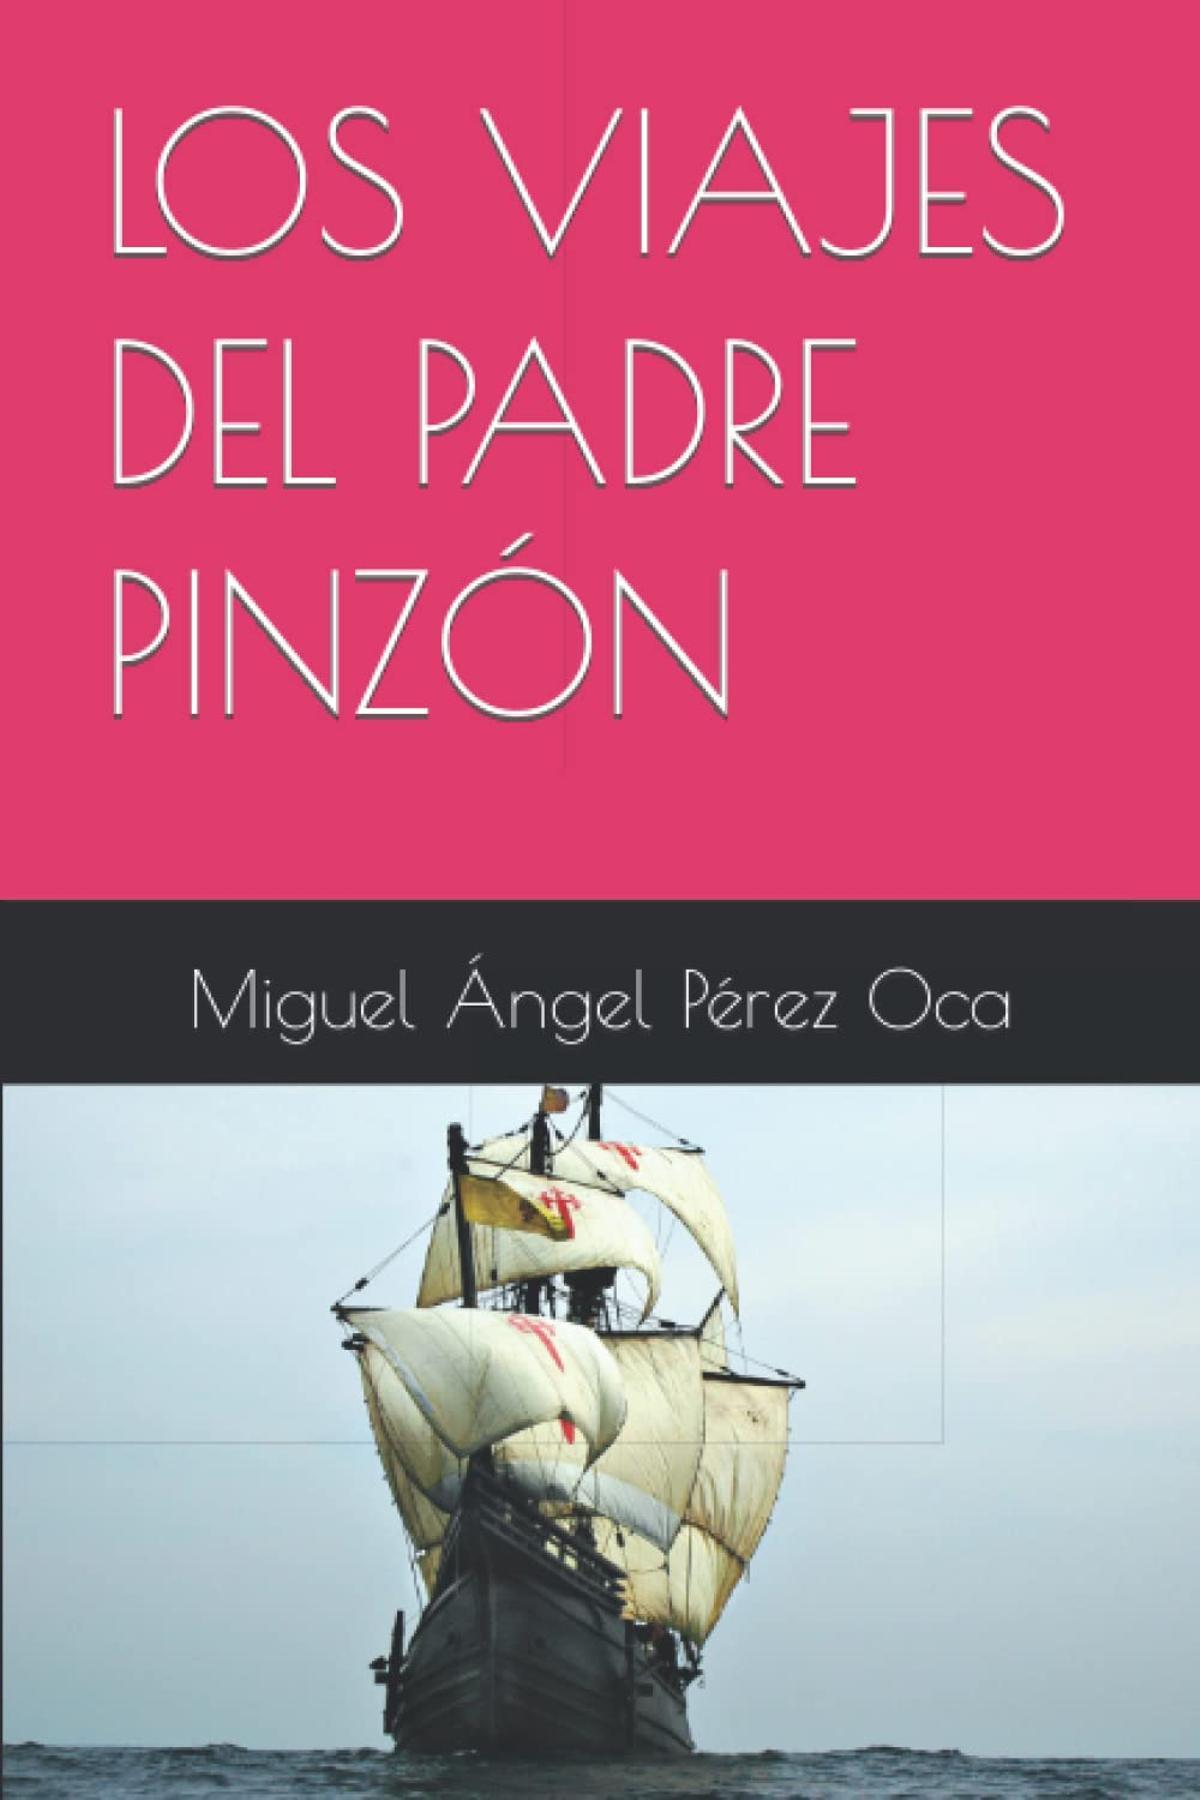 Portada de la novela &quot;Los viajes del padre Pinzón&quot;.